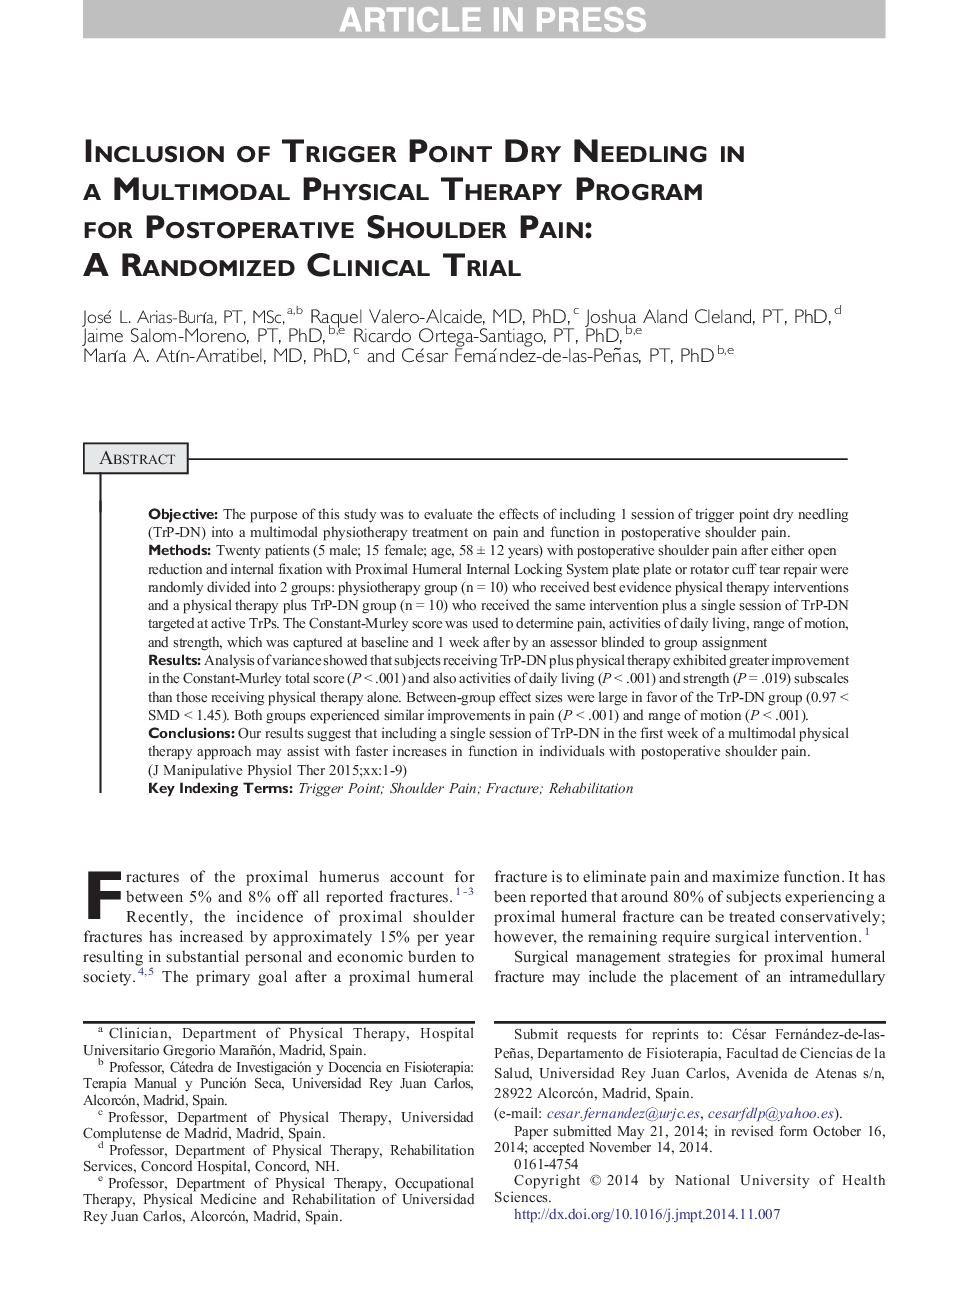 استفاده از سوزن خالص تریدر نقطه در برنامه فیزیوتراپی چندمتغیره برای درد شانه پس از عمل: یک آزمایش بالینی تصادفی 